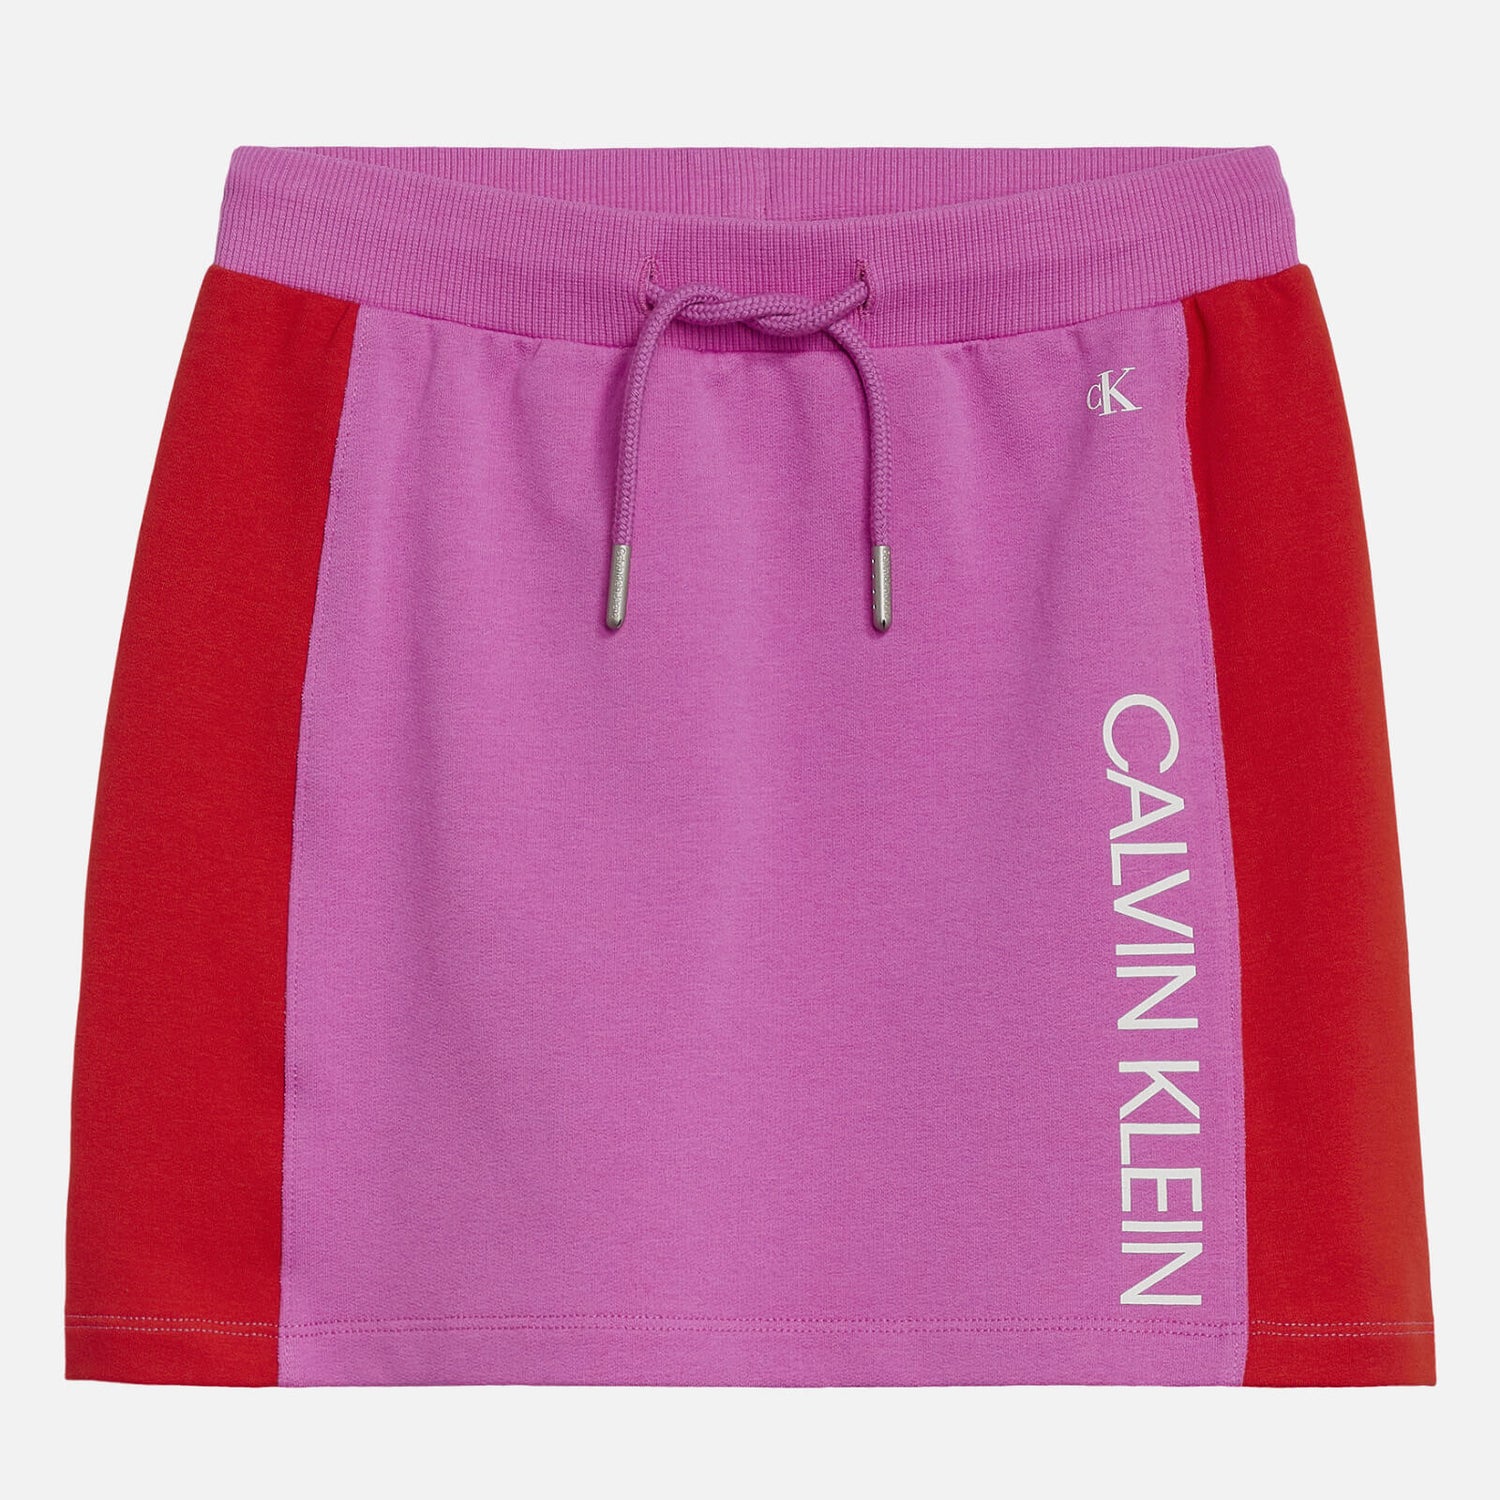 Calvin Klein Girls Colour Block Skirt - Lucky Pink - 14 Years